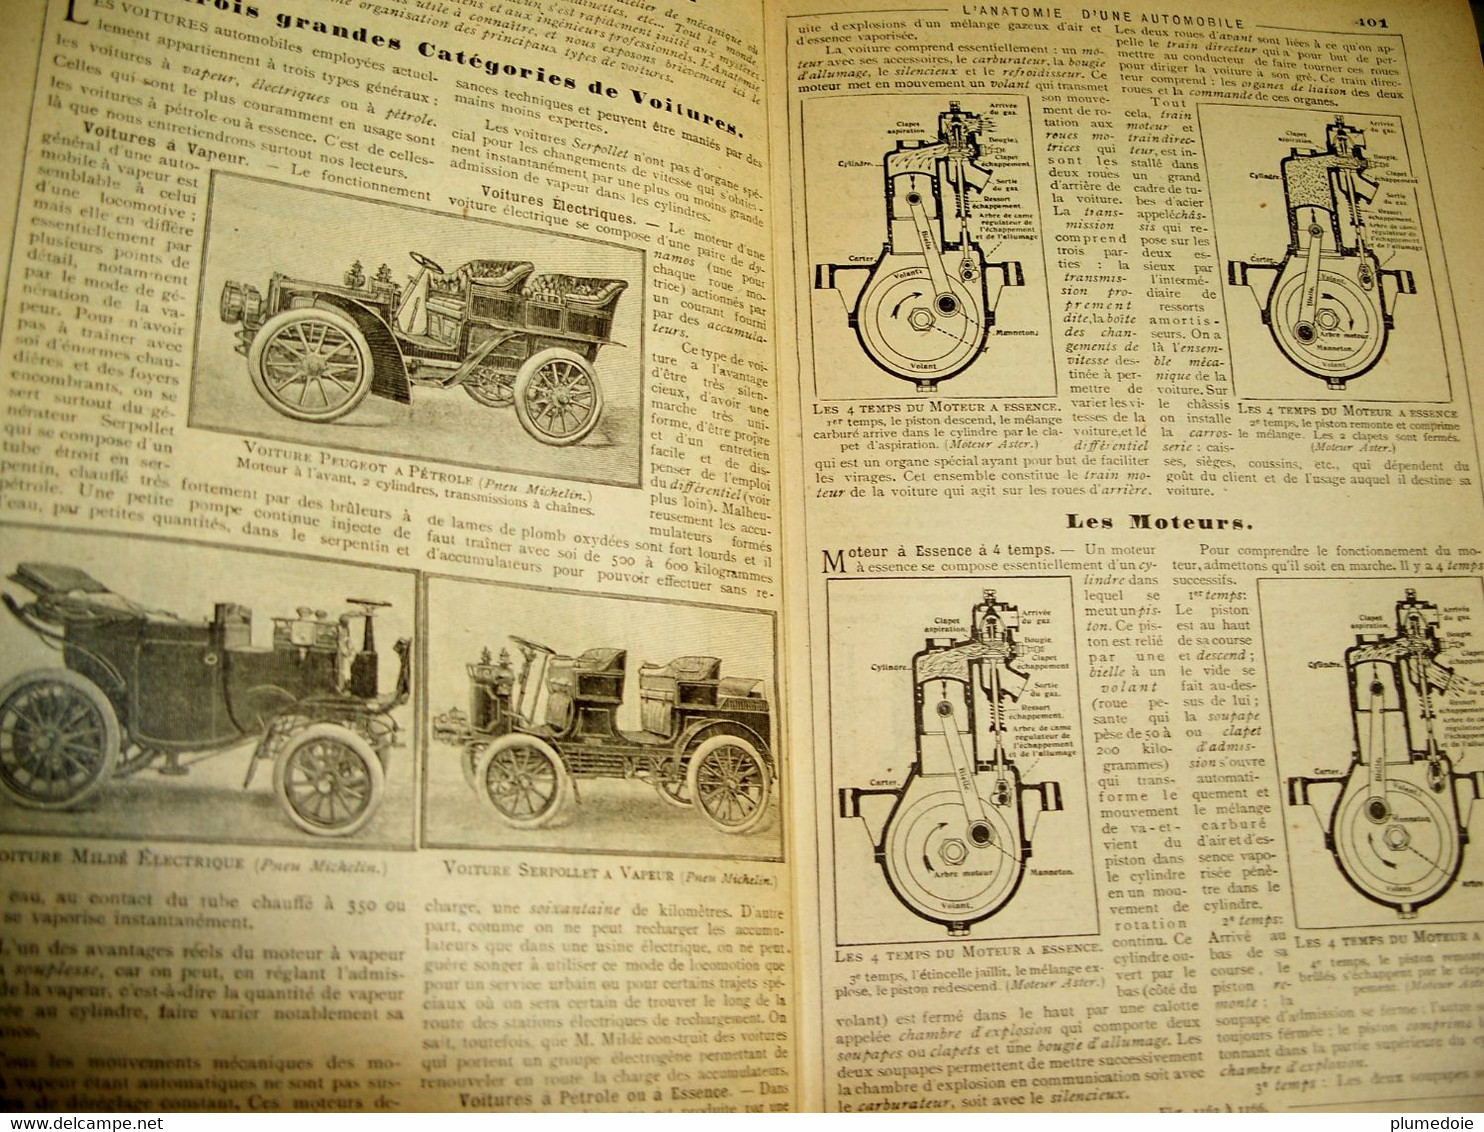 ALMANACH HACHETTE 1904  Petite encyclopédie populaire de la vie pratique. Calendrier . Benjamin RABIER . VAN MUYDEN